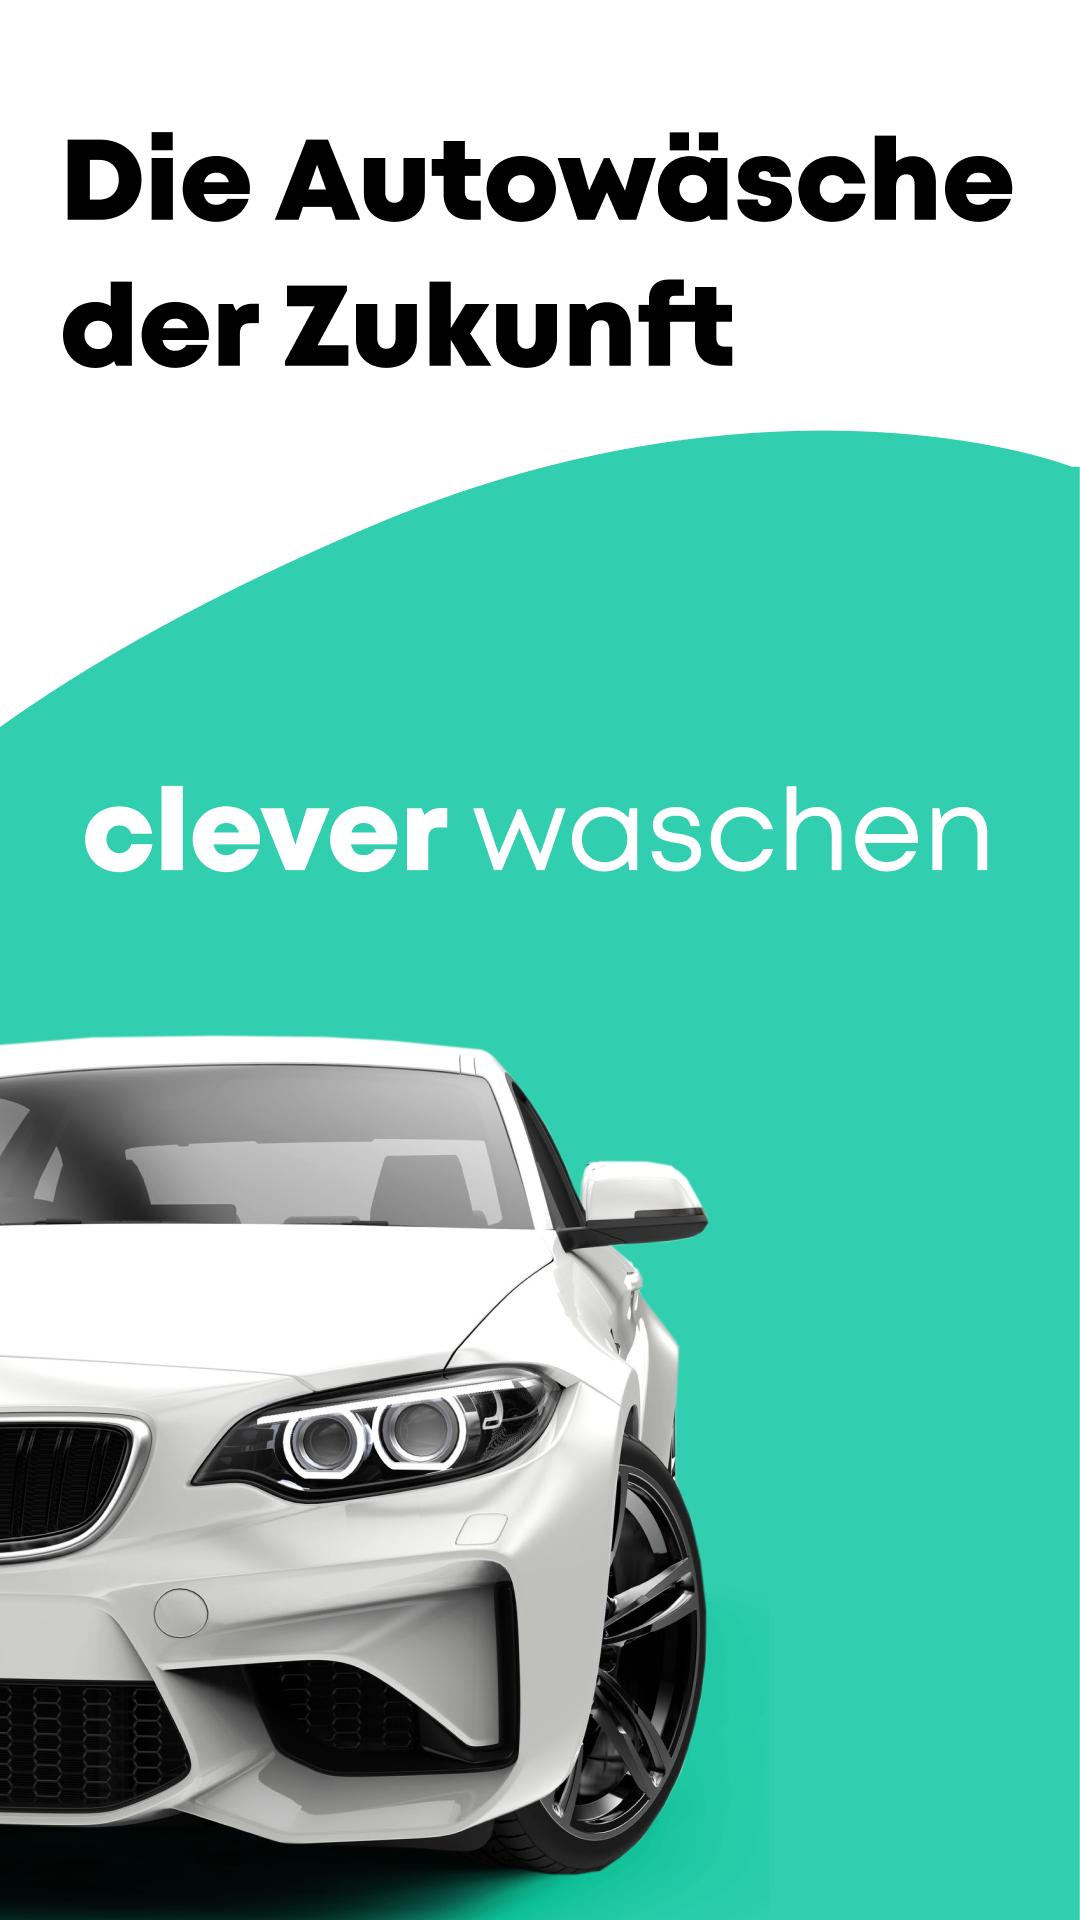 Clever Waschen – die Autowäsche der Zukunft 1.12.1 Screenshot 1